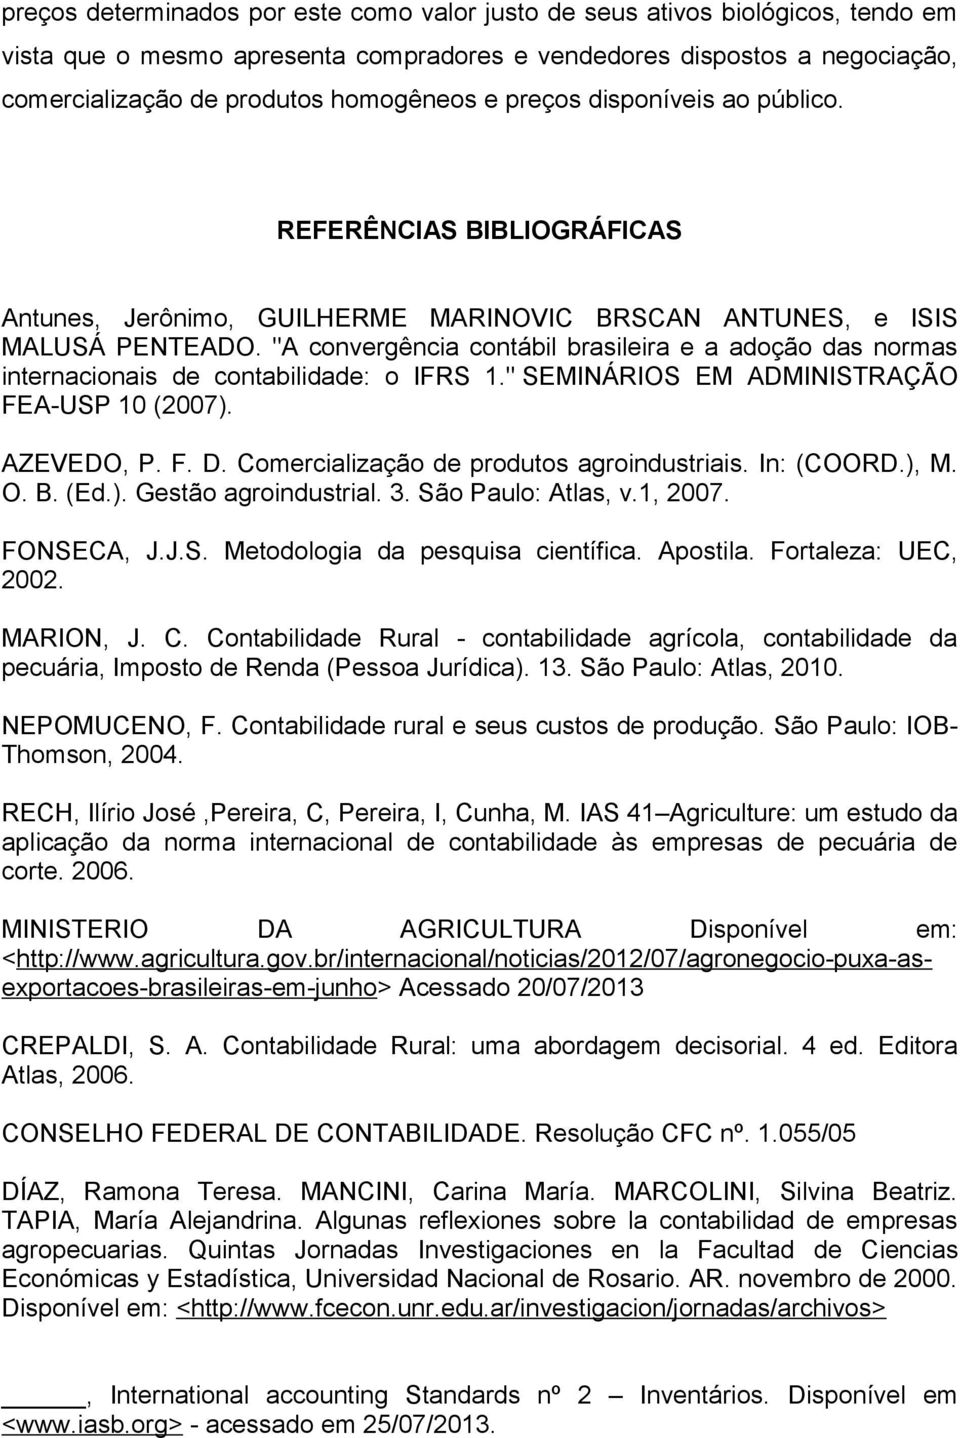 "A convergência contábil brasileira e a adoção das normas internacionais de contabilidade: o IFRS 1." SEMINÁRIOS EM ADMINISTRAÇÃO FEA-USP 10 (2007). AZEVEDO, P. F. D.